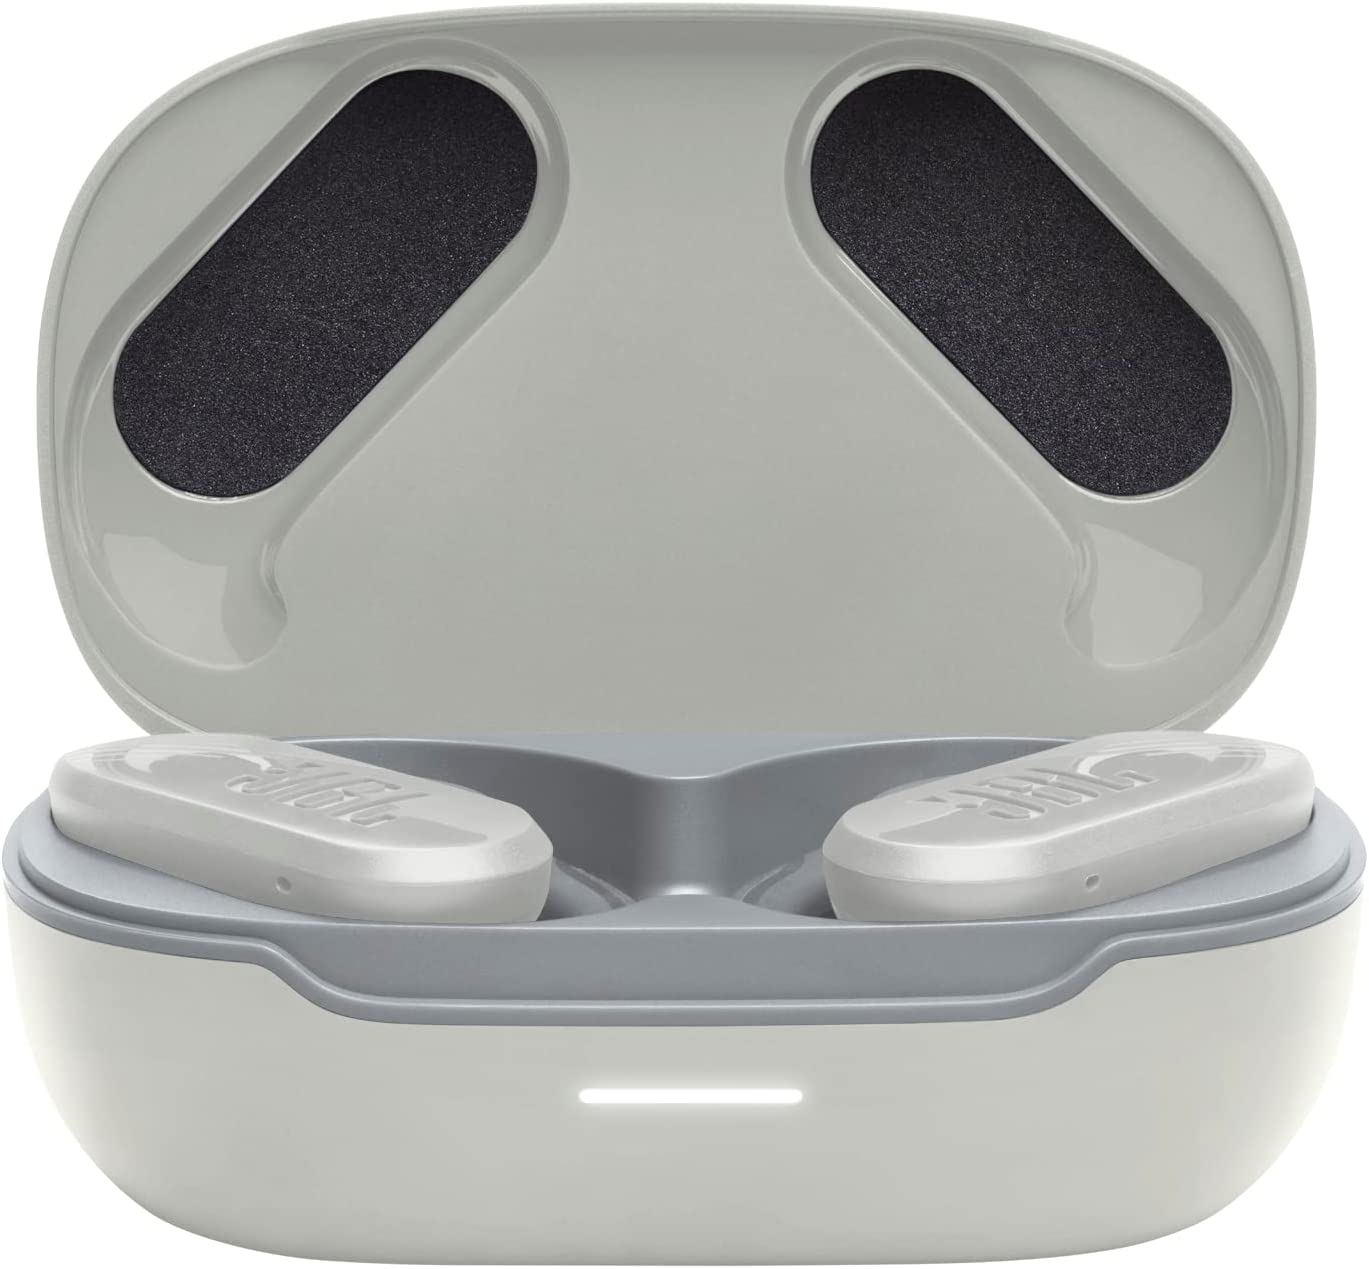 JBL Peak 3 Sport True Wireless Headphones - White